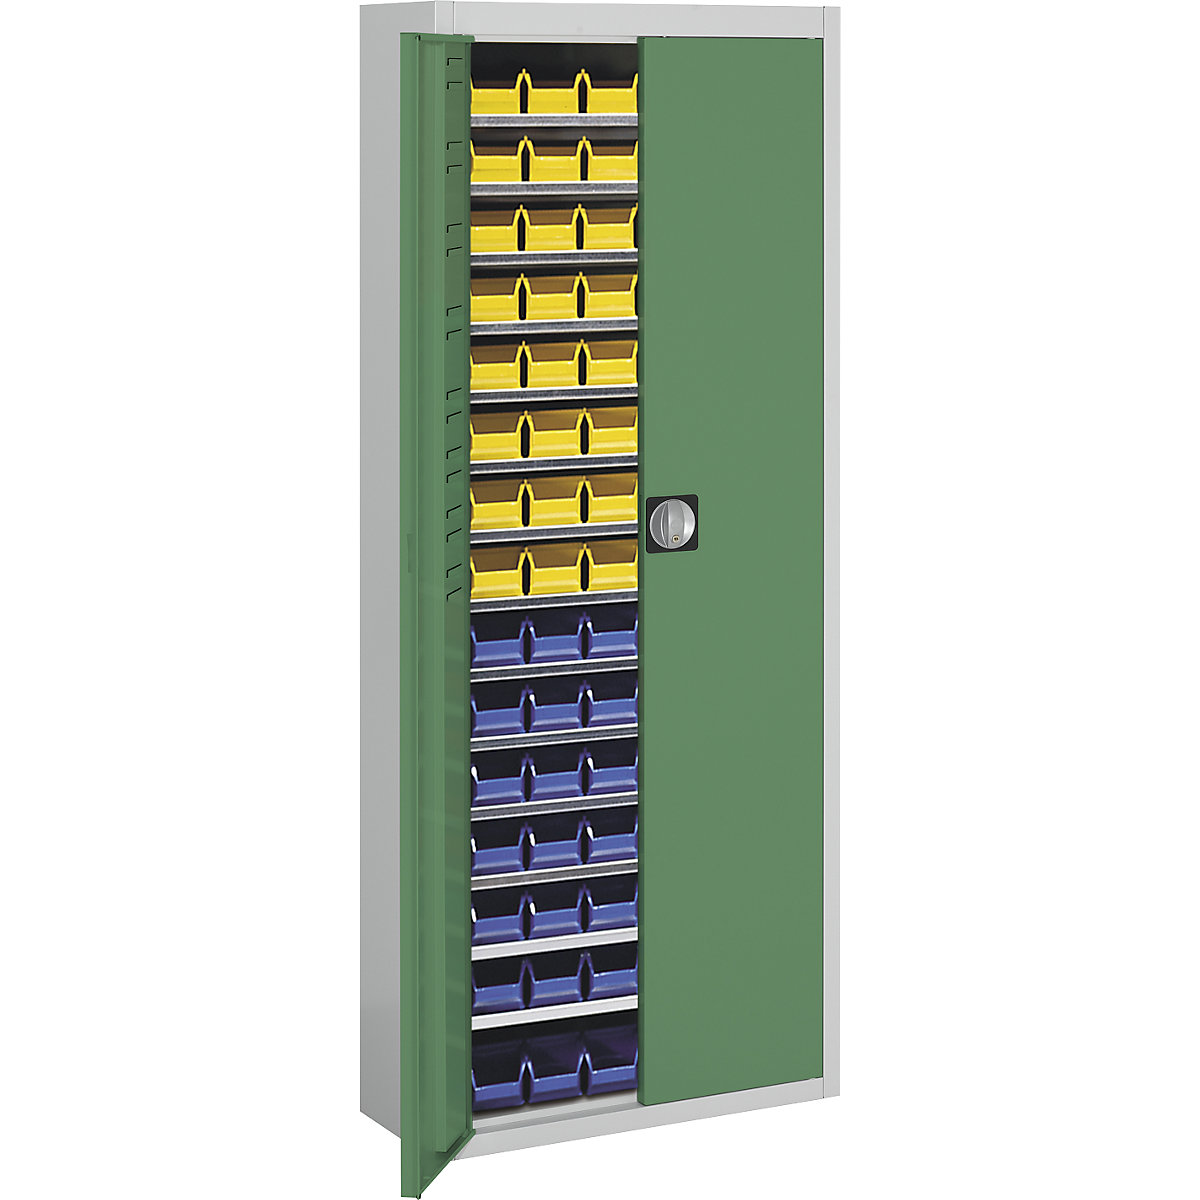 Skladišni ormar s otvorenim skladišnim kutijama – mauser, VxŠxD 1740 x 680 x 280 mm, u dvije boje, korpus u sivoj boji, vrata u zelenoj boji, 90 kutija-10